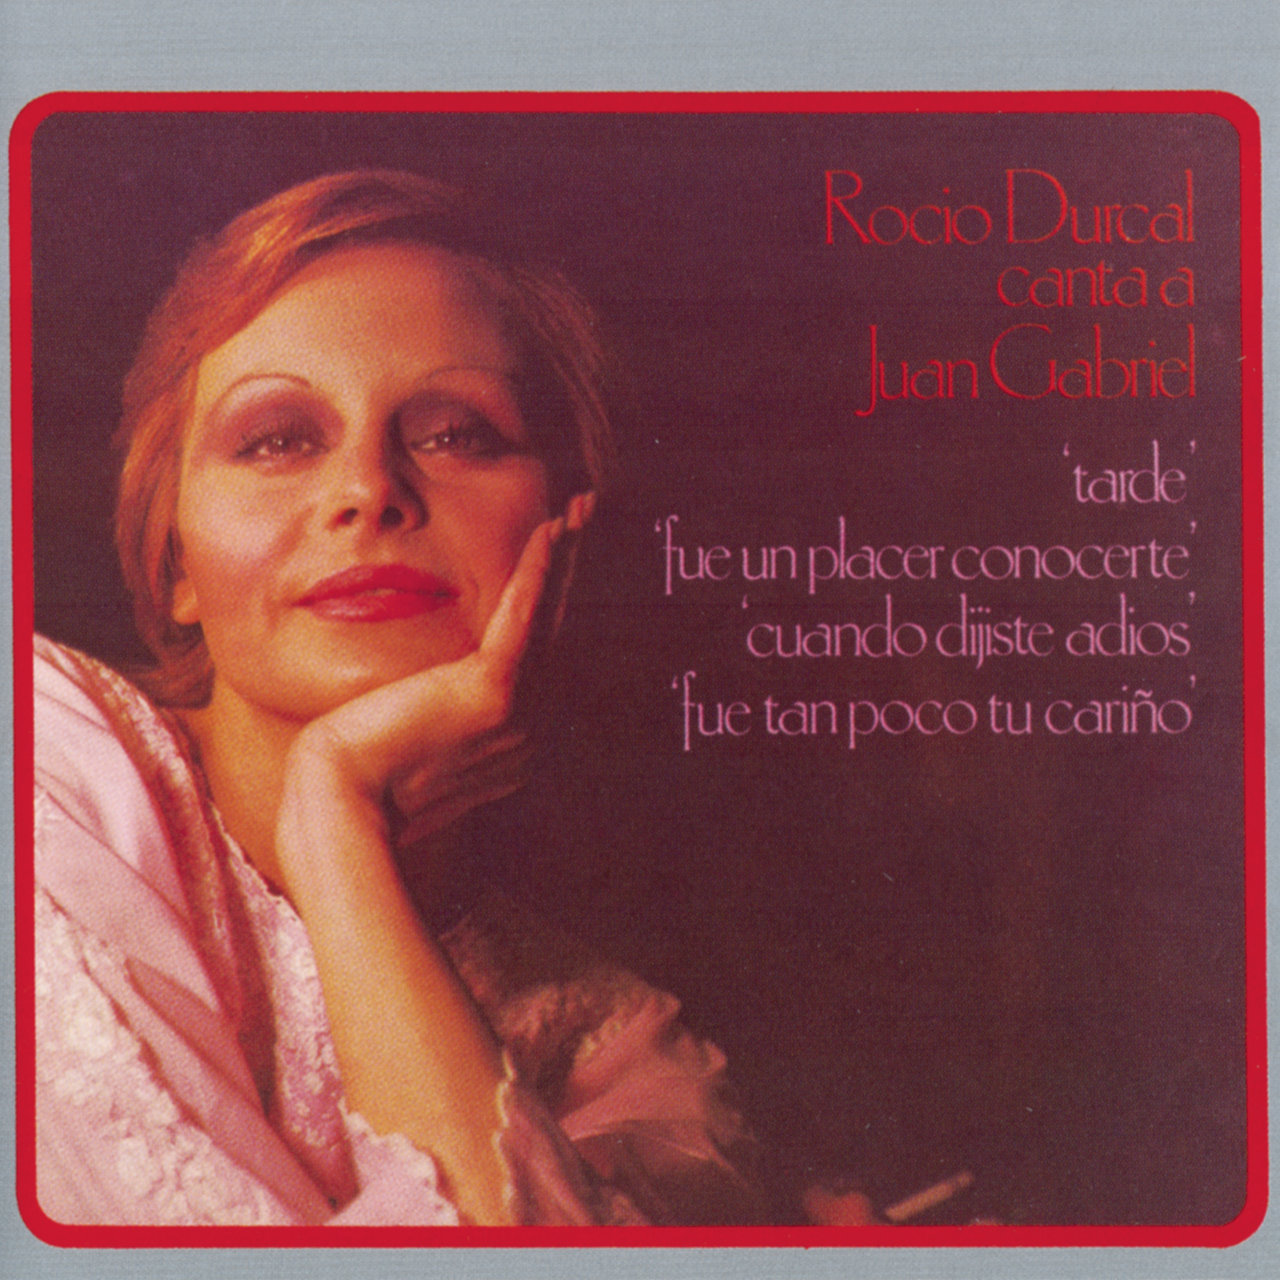 Rocio Durcal Canta A Juan Gabriel [1977]